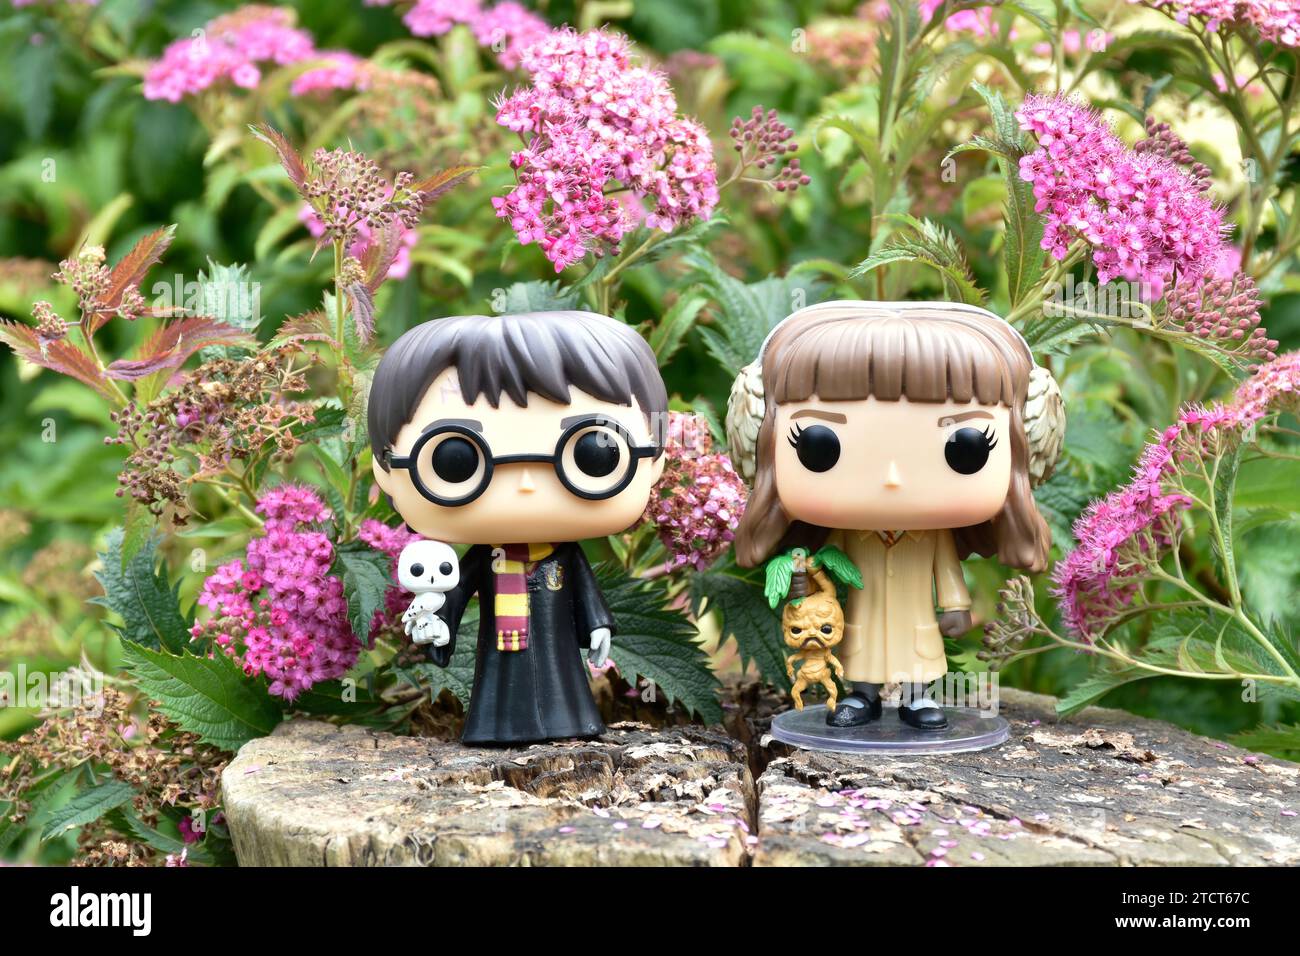 Funko Pop Actionfiguren von Harry Potter und Hermine Granger. Rosa Blumen, Waldlichtung, magische Wälder, Zauberwelt, Freundschaft. Stockfoto